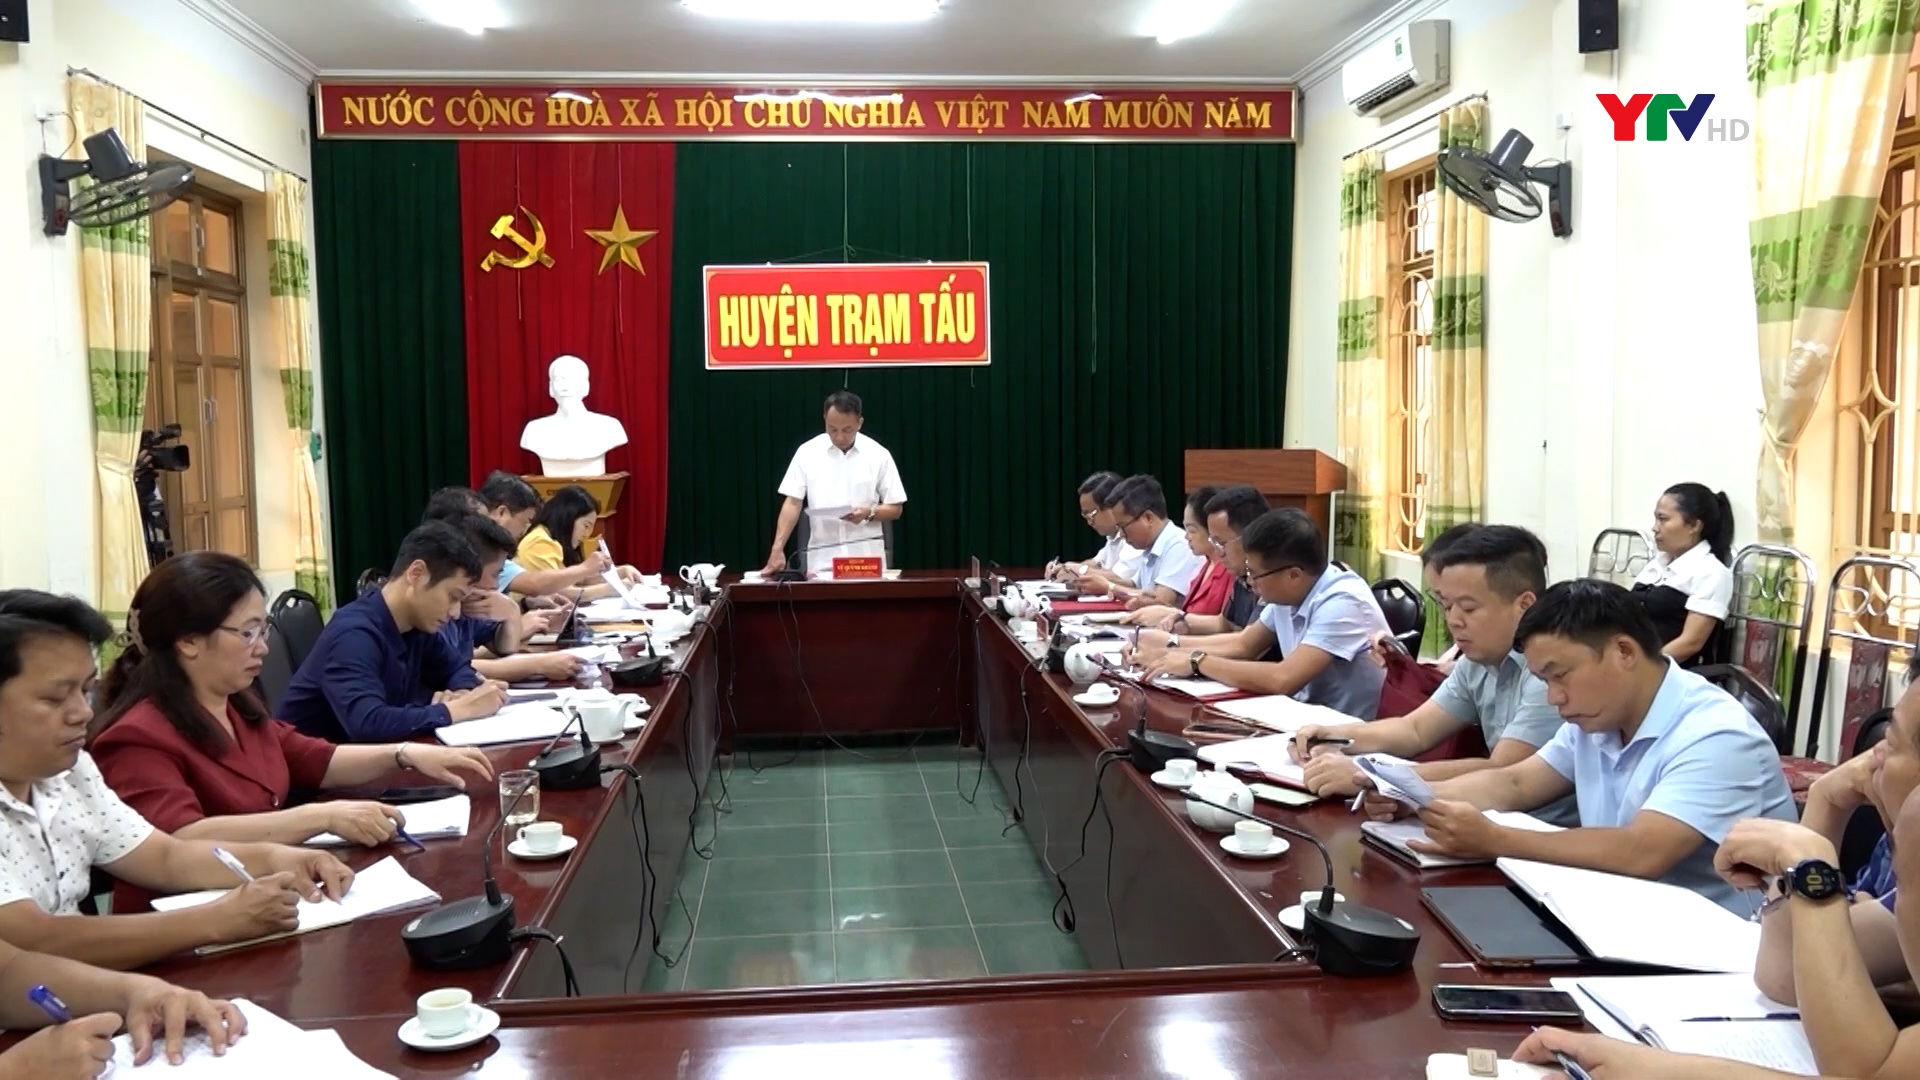 Đồng chí Phó Chủ tịch thường trực HĐND tỉnh Vũ Quỳnh Khánh làm việc tại huyện Trạm Tấu